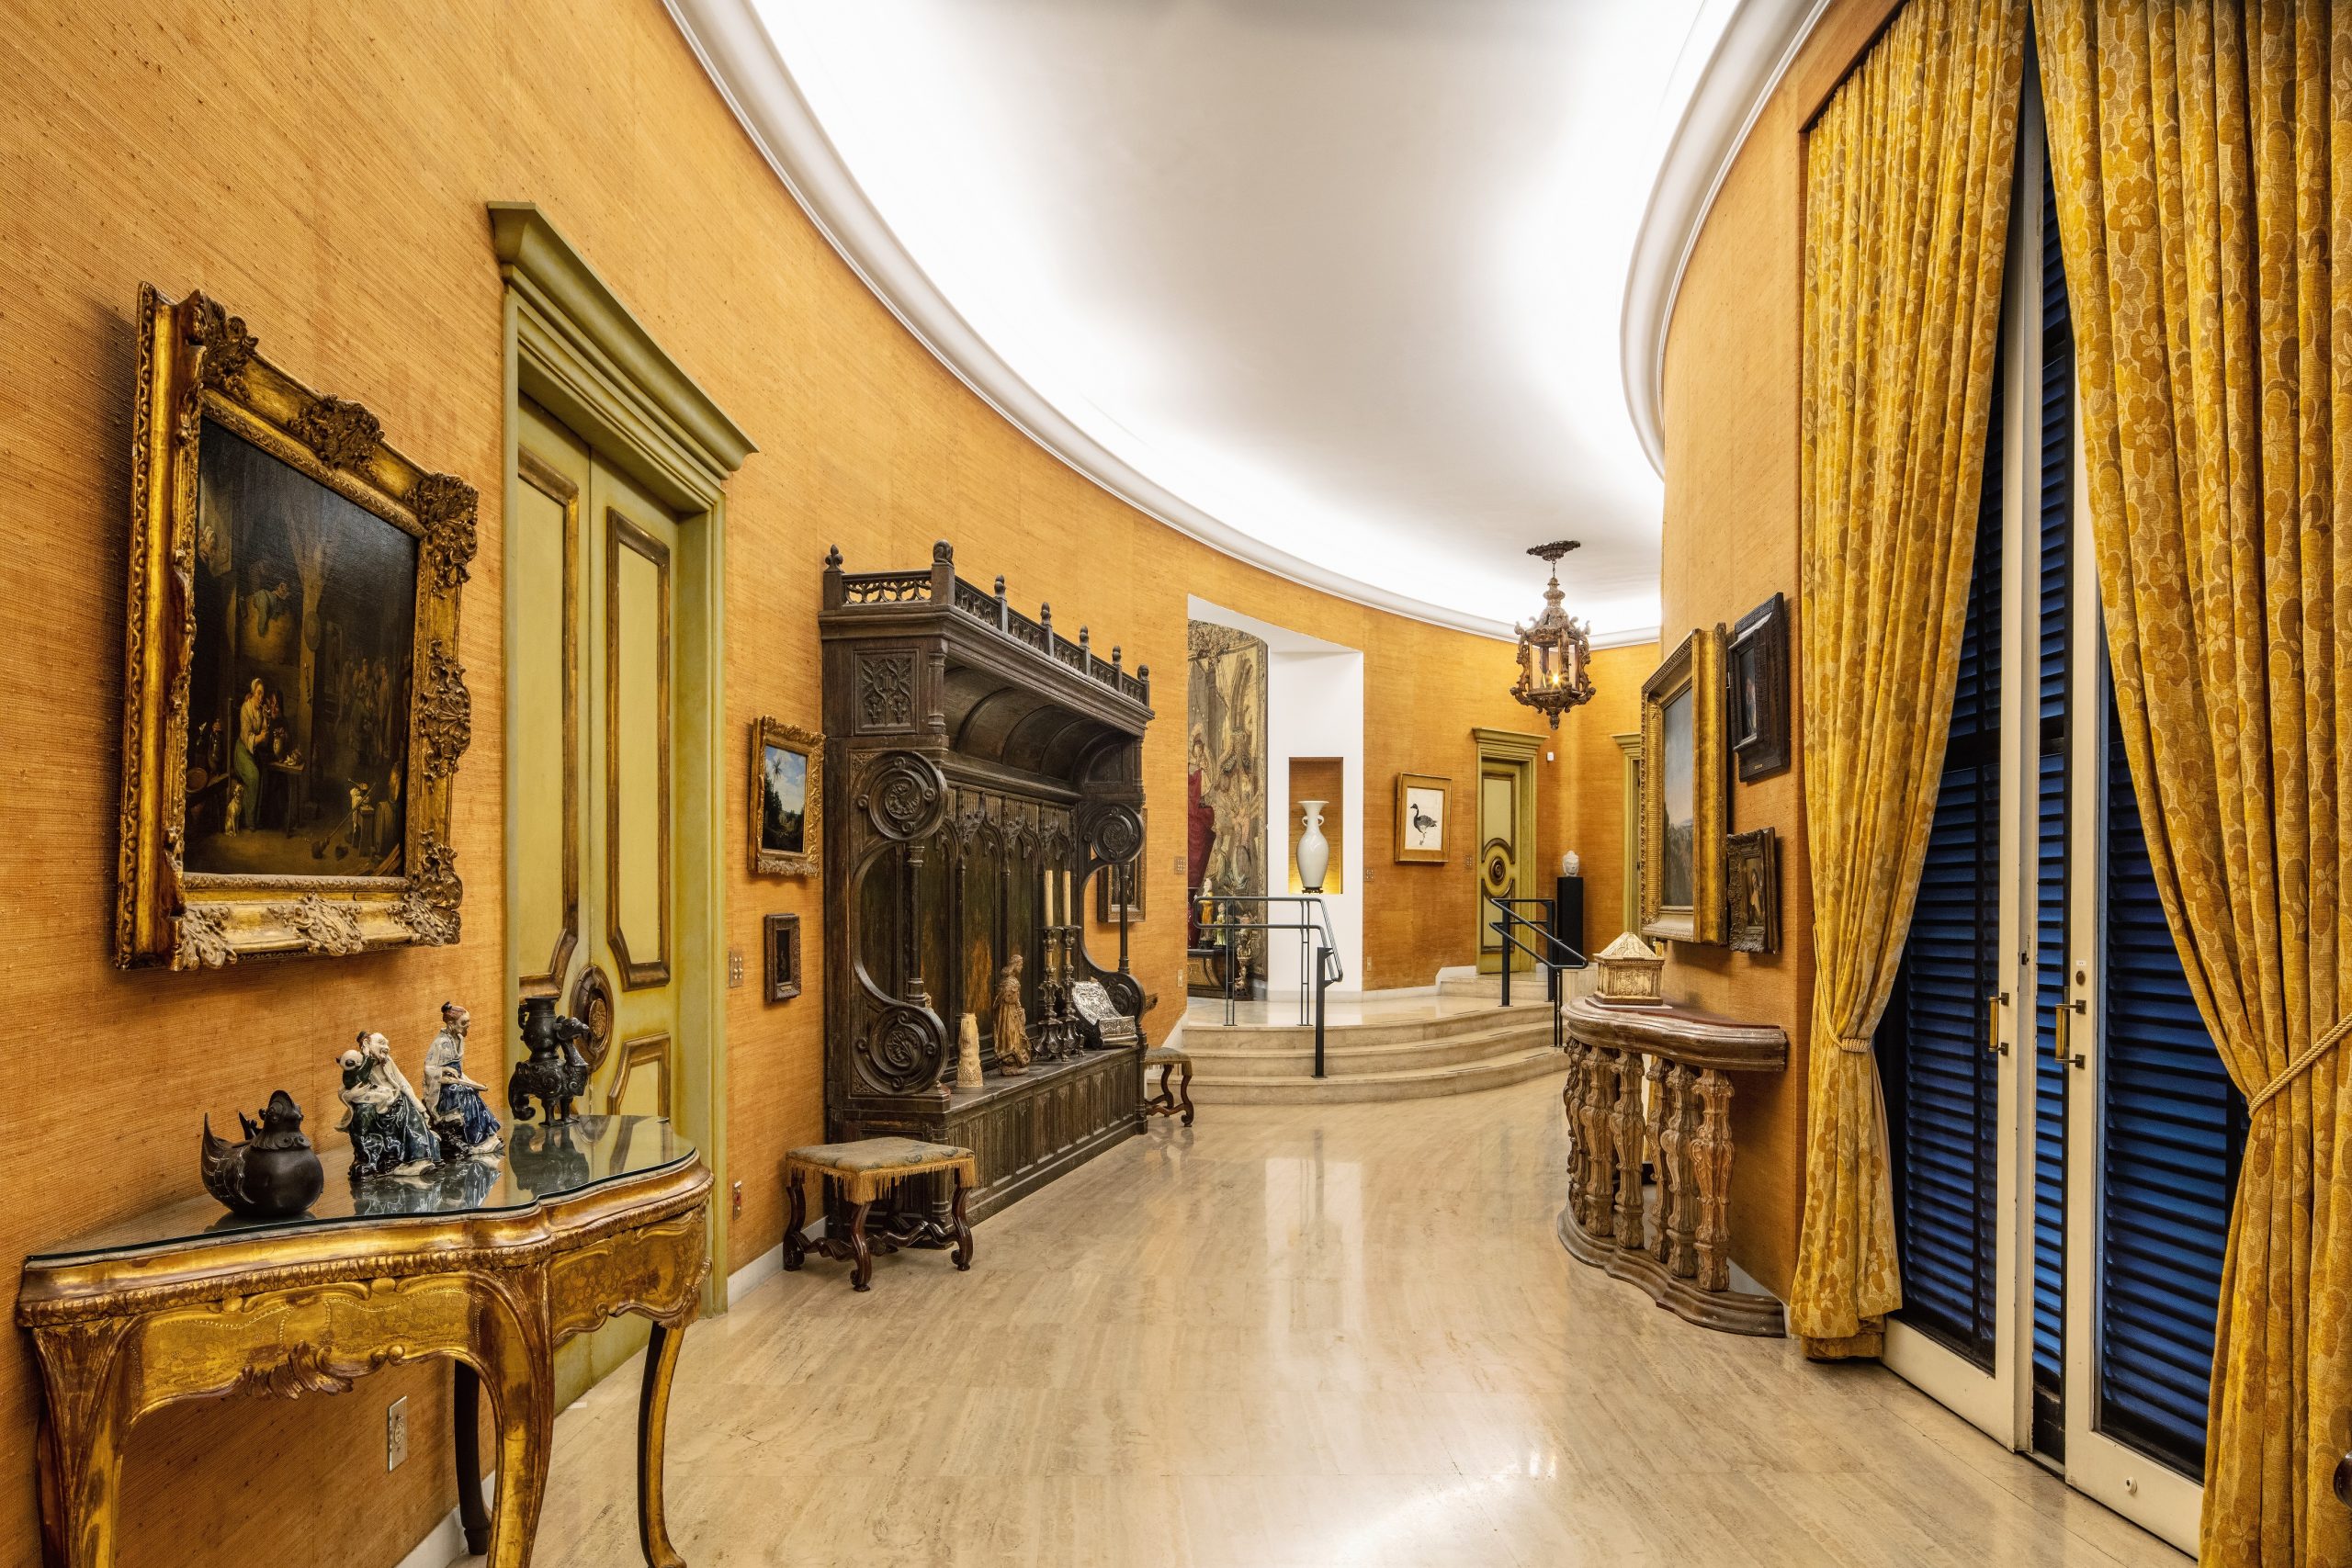 Casa Museu Ema Klabin recebe o XVI Encontro Brasileiro de Palácios, Museus-Casas e Casas Históricas